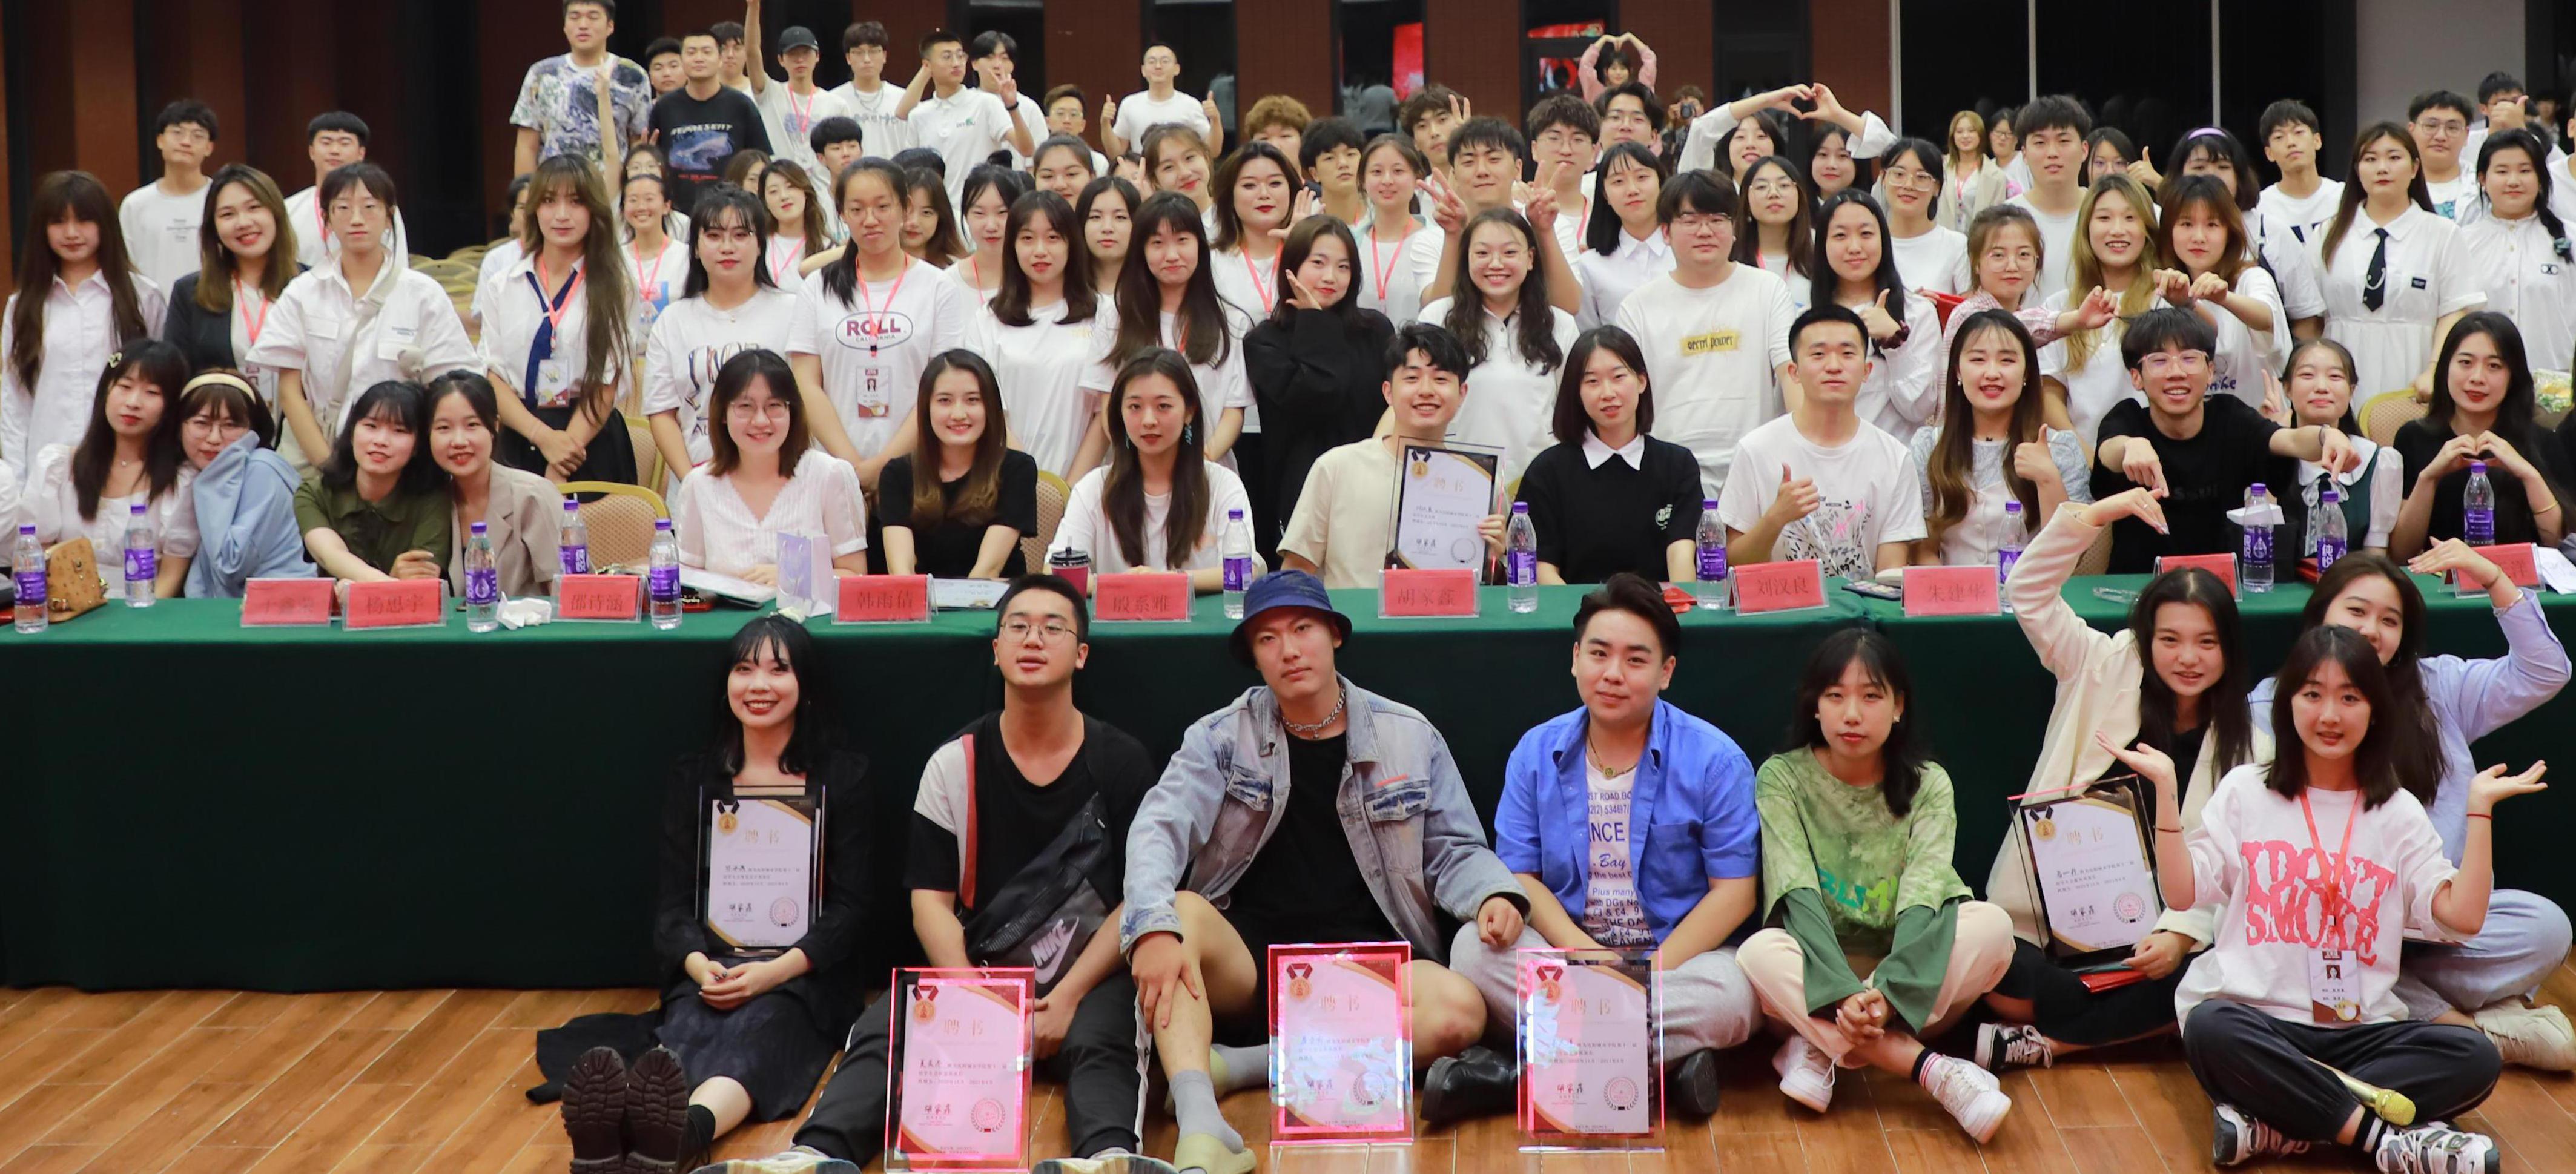 沈阳城市学院学生会举行表彰大会暨2018级学生干部卸任仪式